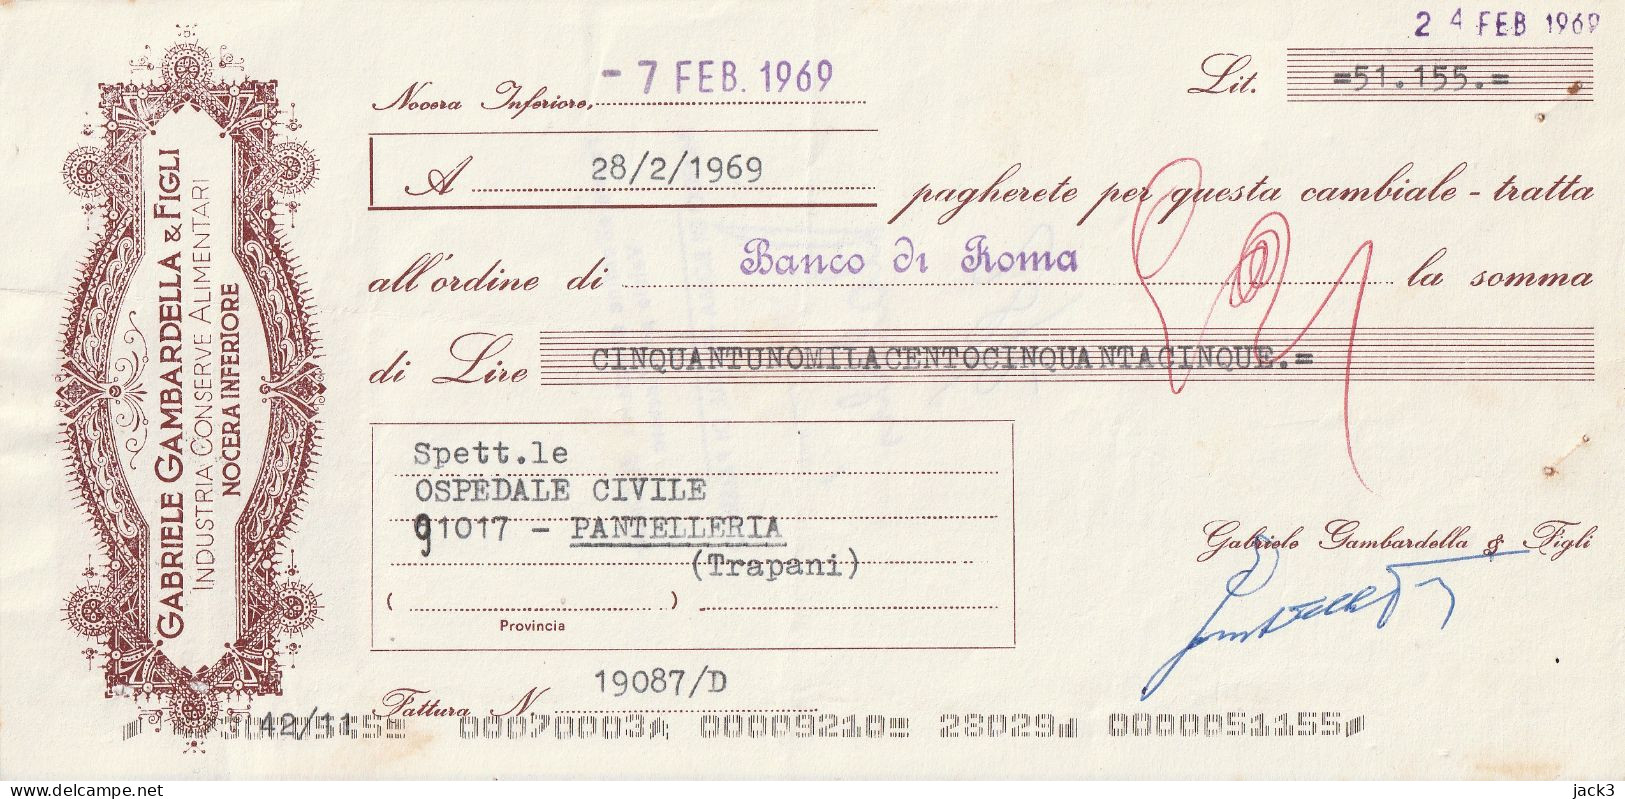 CAMBIALE - BANCO DI ROMA - CAMBIALE CON TASSELLO PUBBLICITARIO - NOCERA INFERIORE 1969 - Chèques & Chèques De Voyage